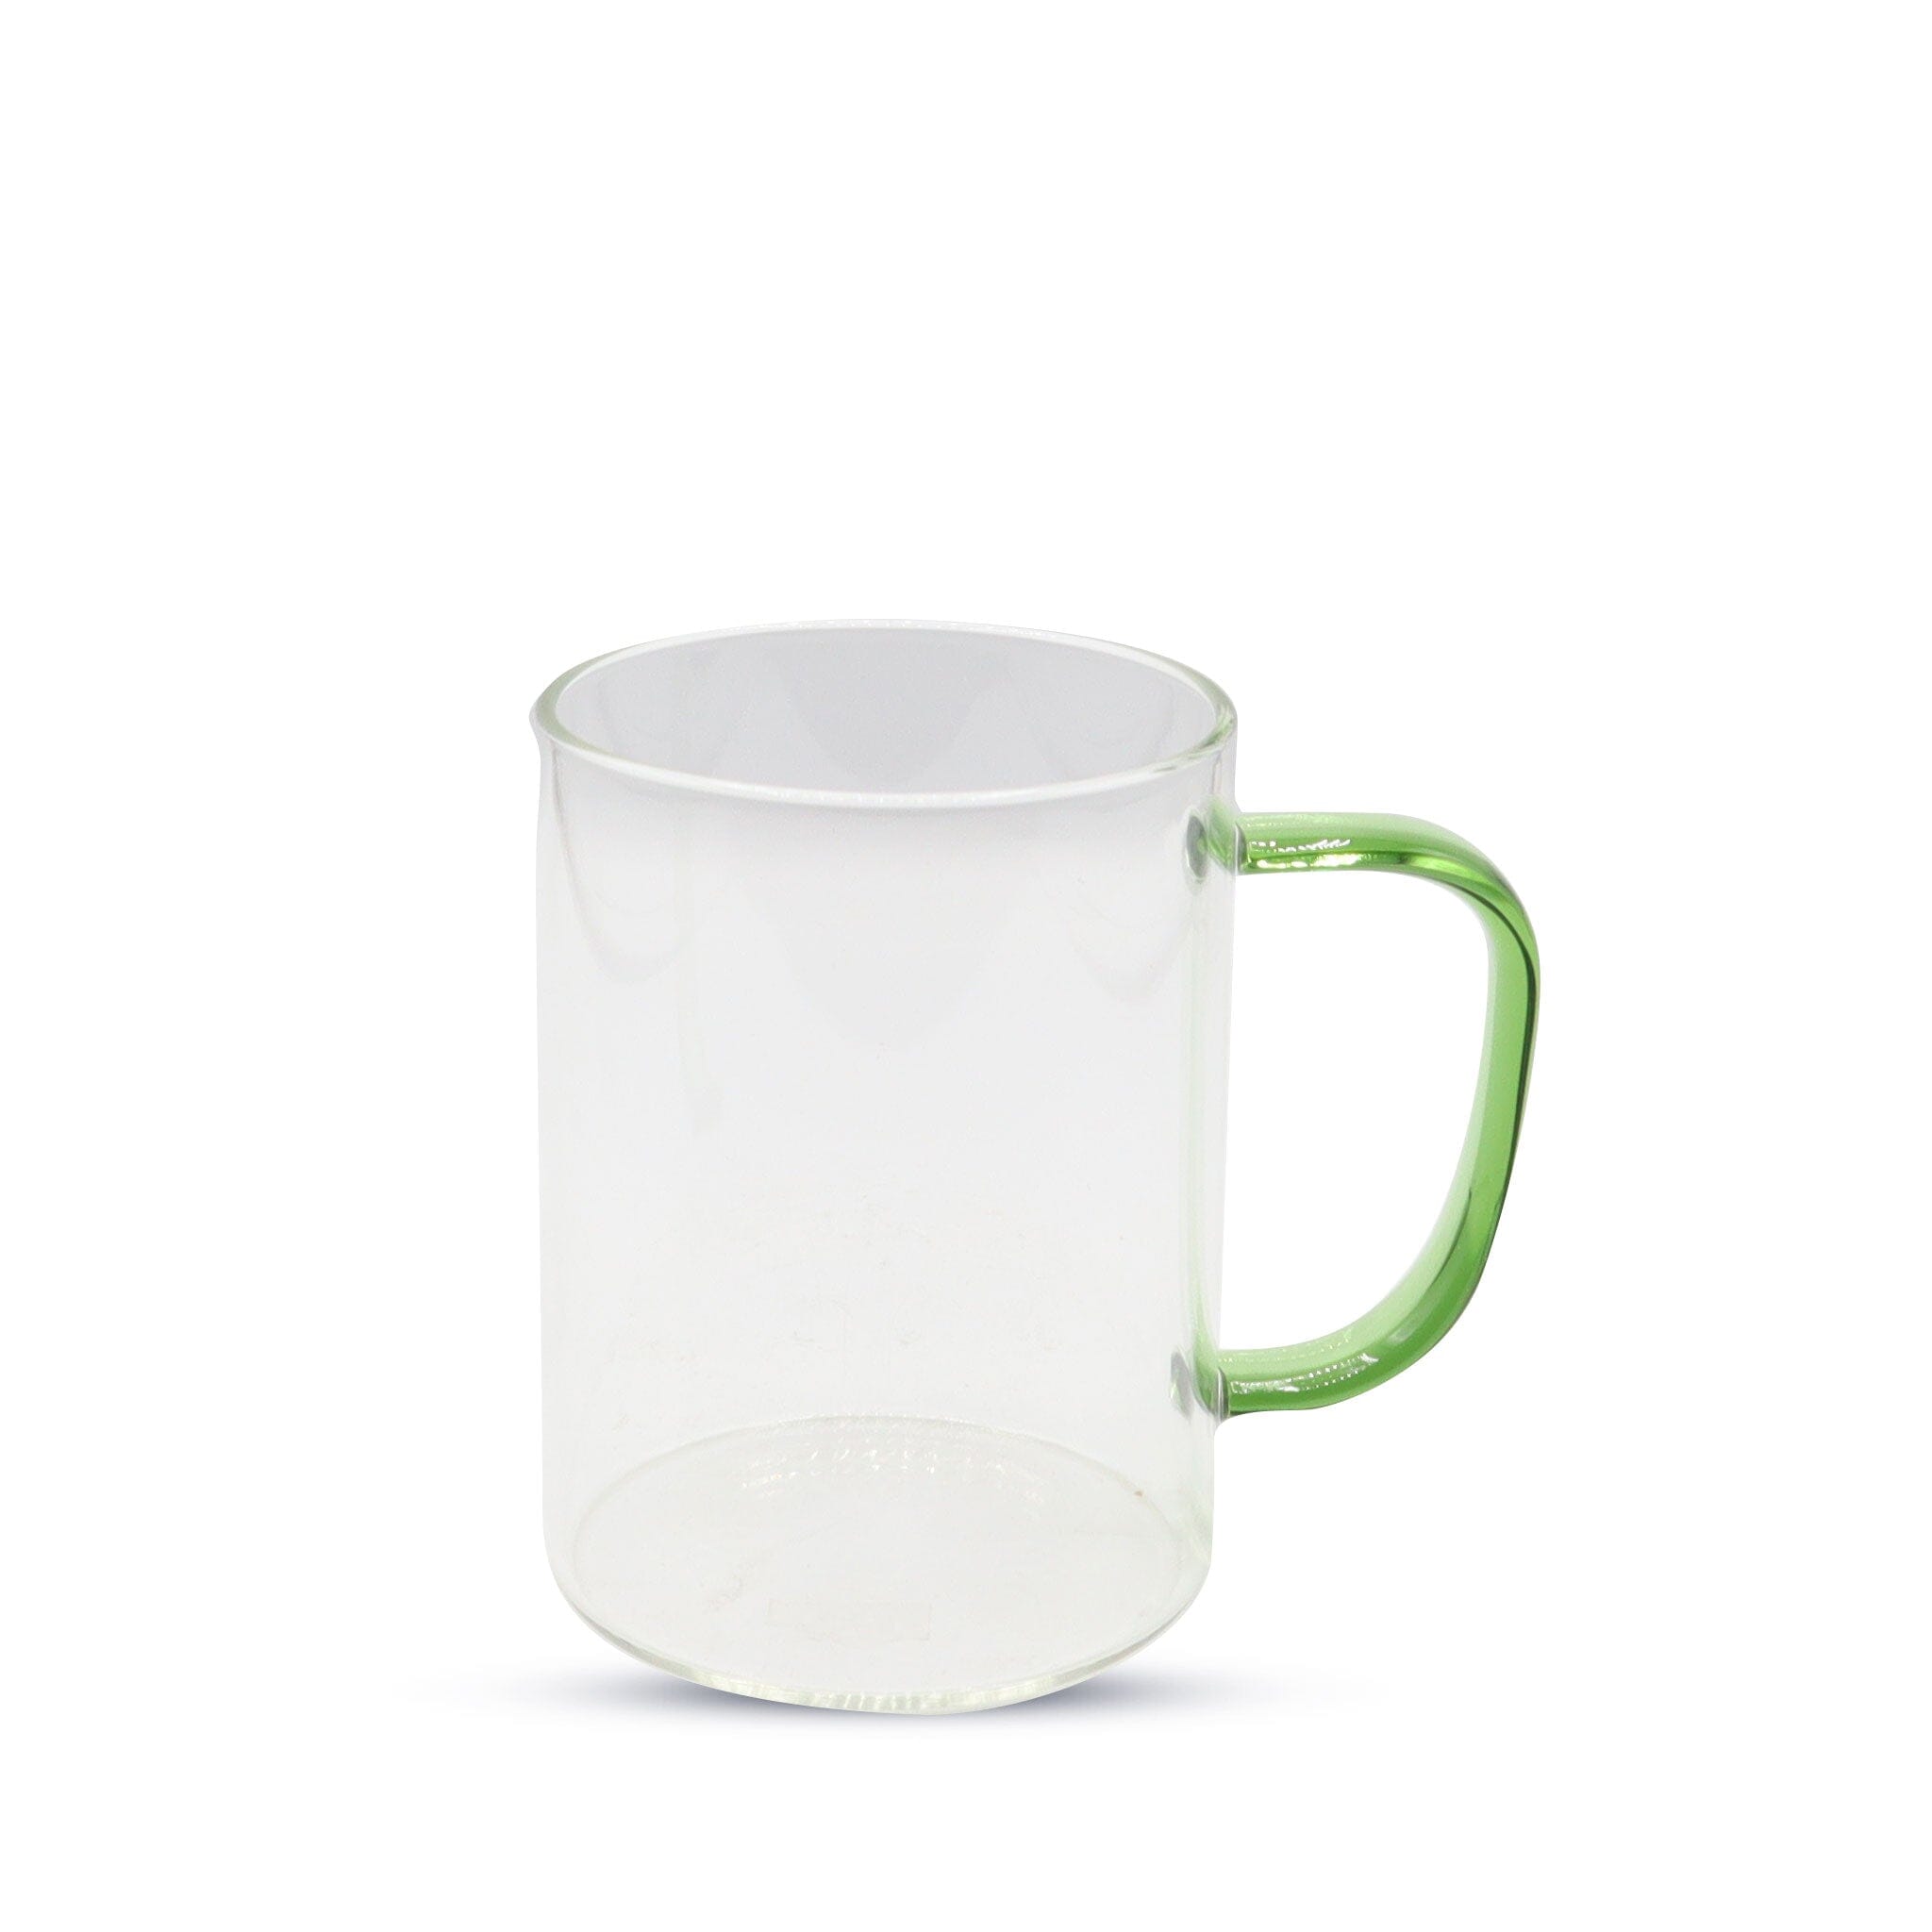 https://www.kupresso.com/cdn/shop/products/15oz-sublimation-glass-camper-mug-clear-kupresso-clear-green-185335.jpg?v=1684886147